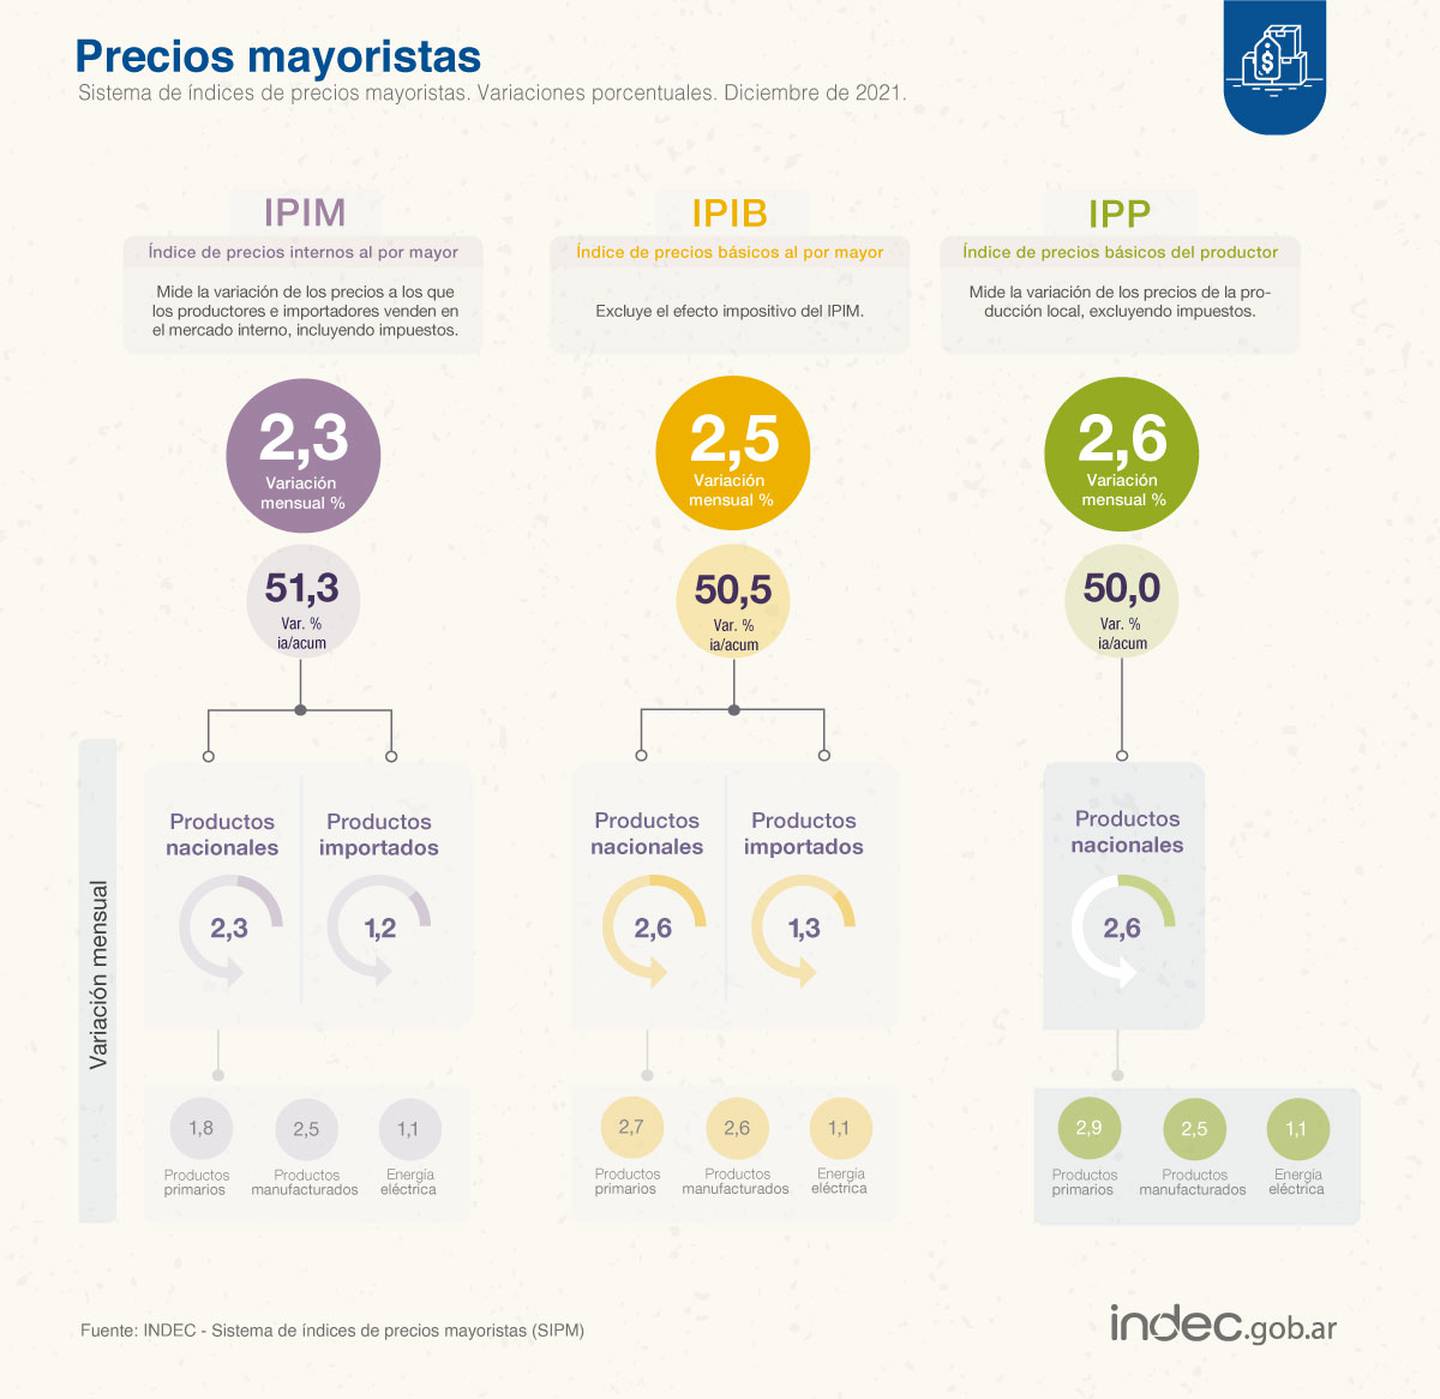 Precios Mayoristas en Argentina. Fuente: Indecdfd